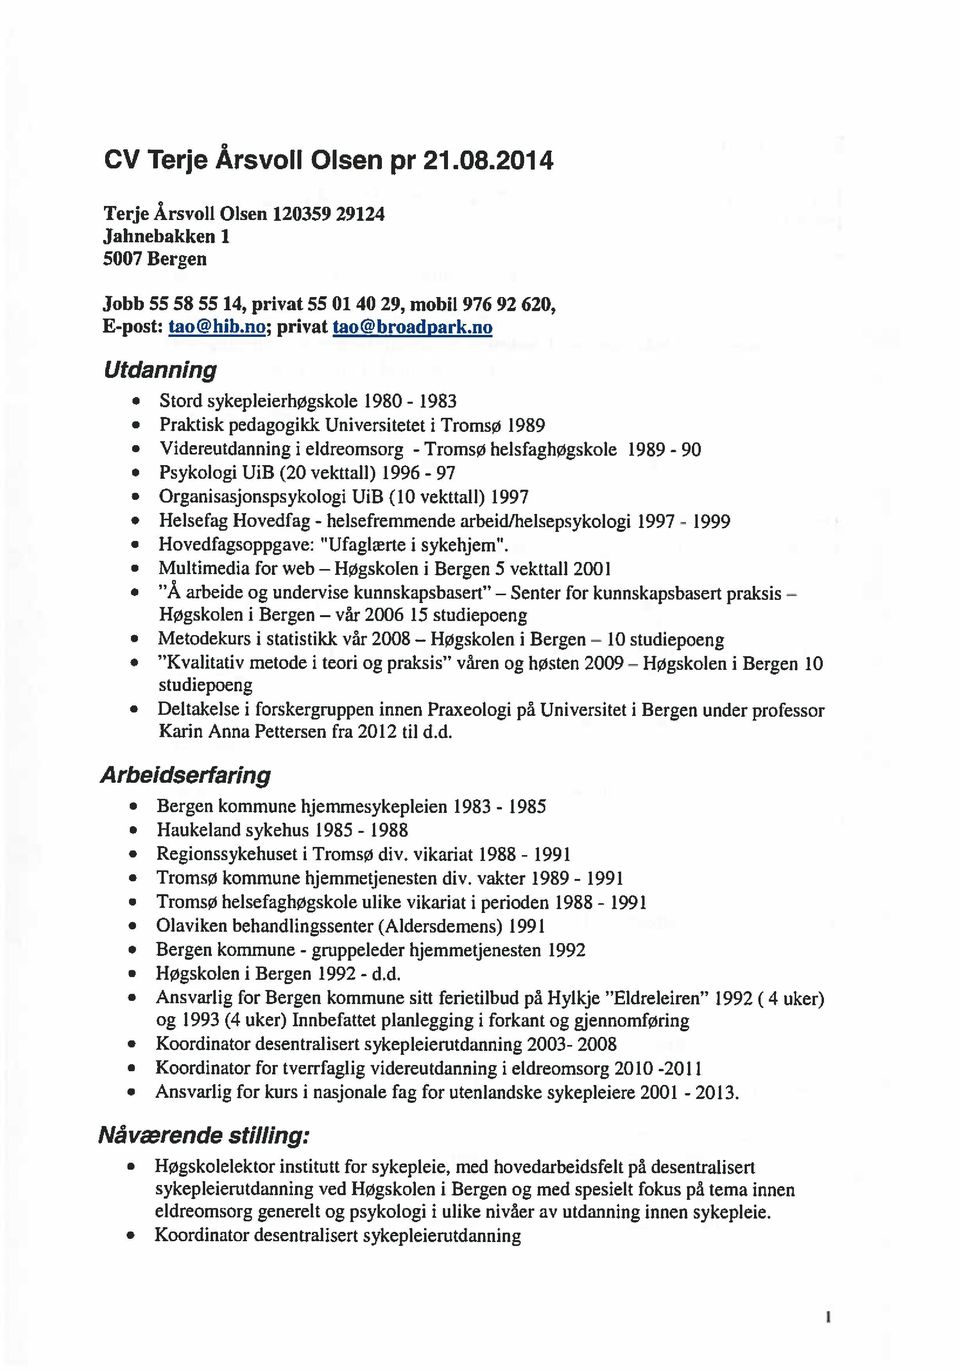 Organisasjonspsykologi UiB (10 vekitali) ]997 Heisefag Hovedfag - helsefremmende arbeid/helsepsykologi 1997-1999 Hovedfagsoppgave: Ufaglærte i sykehjem.